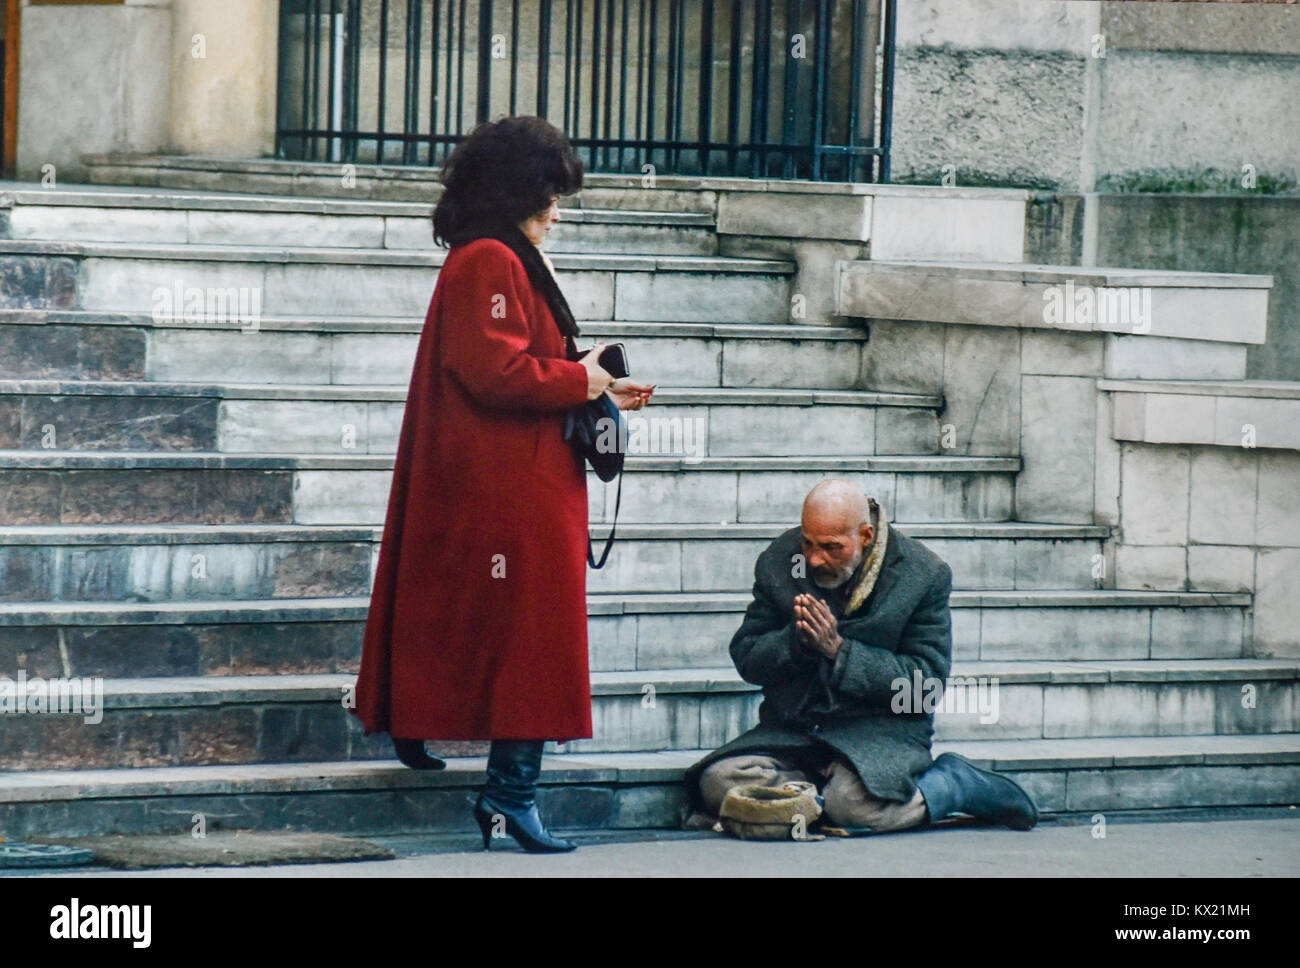 La Romania 1994 - contrasto tra ricchi e poveri dopo la rivoluzione come una donna facoltosa passa un mendicante per le strade di Timisoara Foto Stock